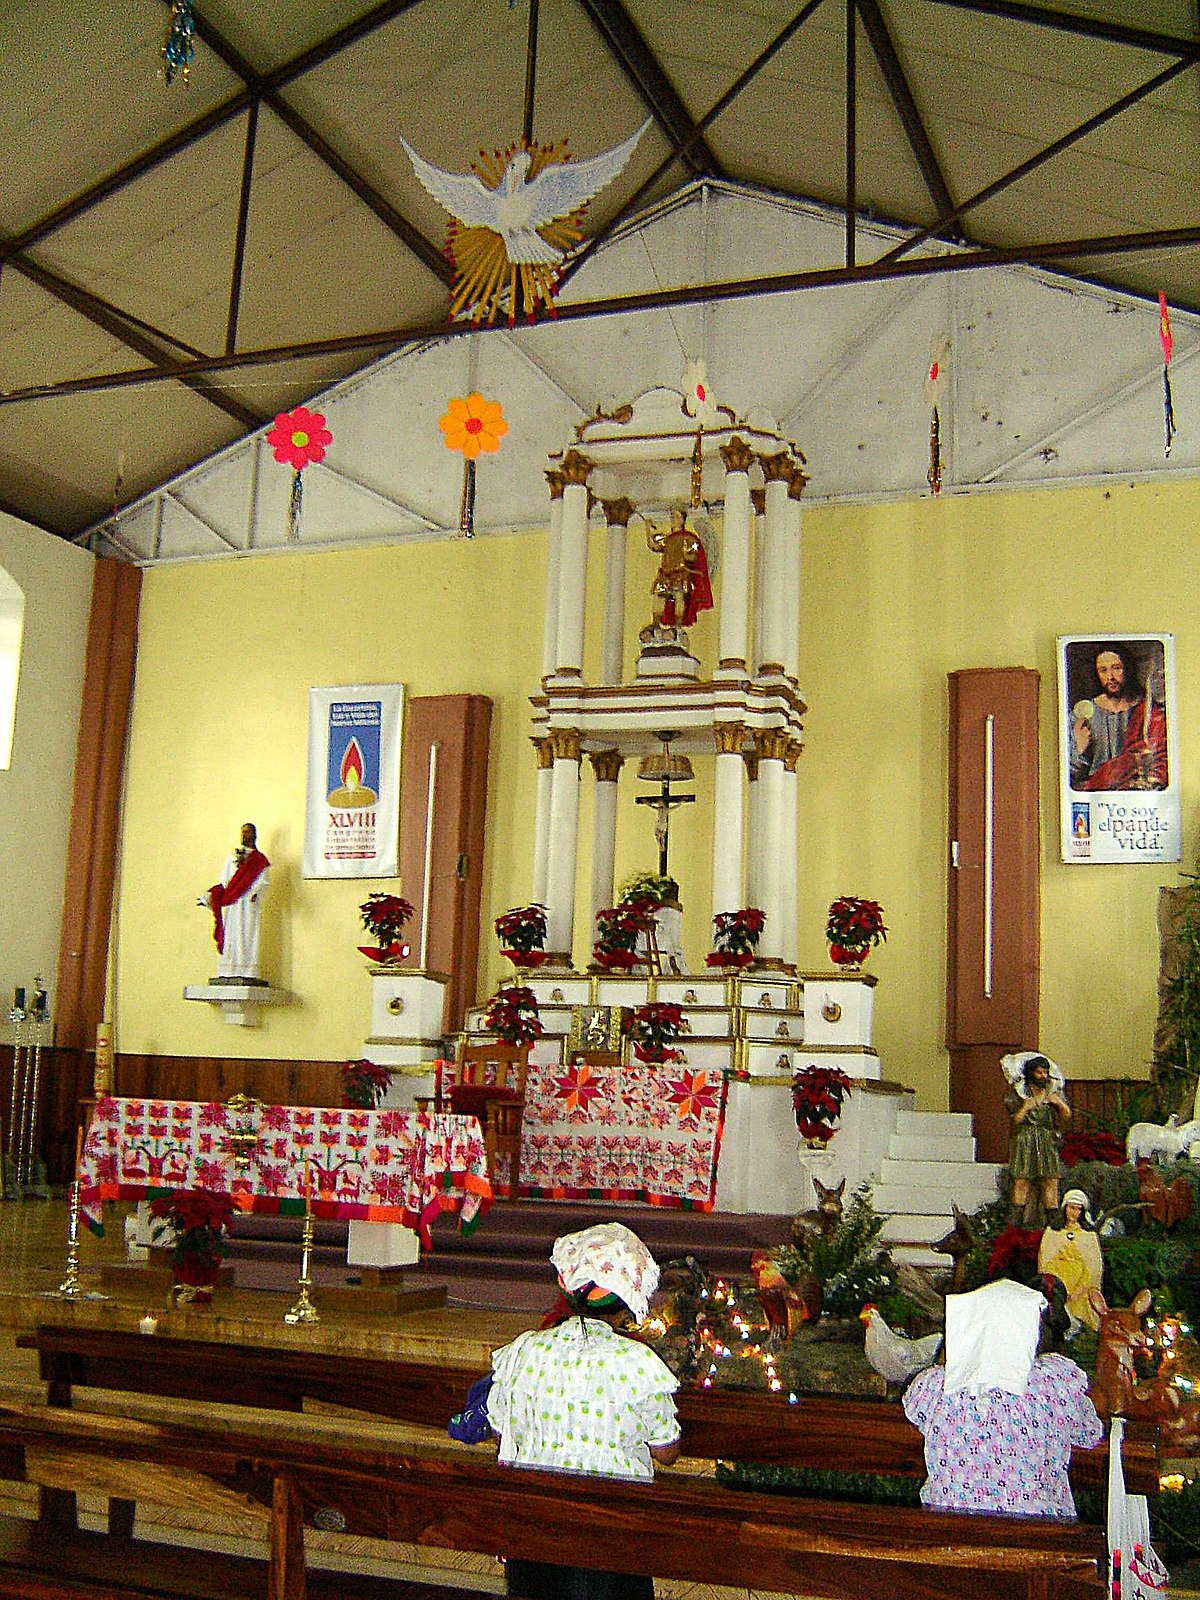 File:Altar de San Miguel Arcangel.jpg - Wikimedia Commons